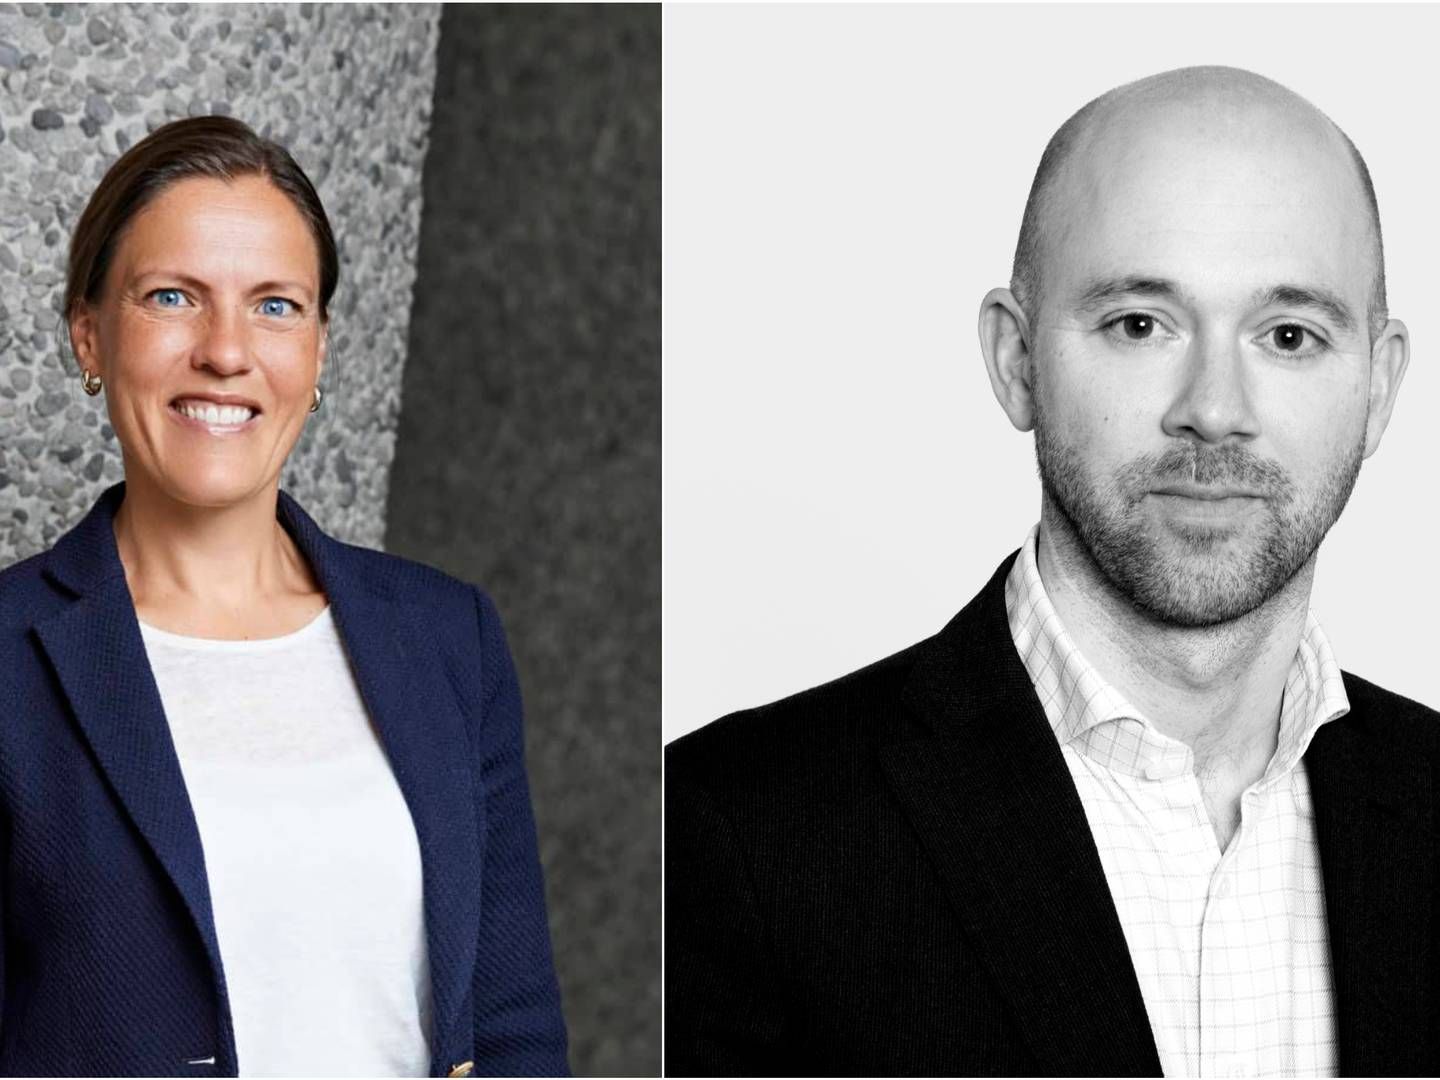 TO AV ADVOKATENE: Haavind-partner Terese Negaard Sørli og advokat Eirik Brønner i Brønner & Co er to av advokatene som har vært involvert i den omfattende saken. | Foto: Haavind / Brønner & Co